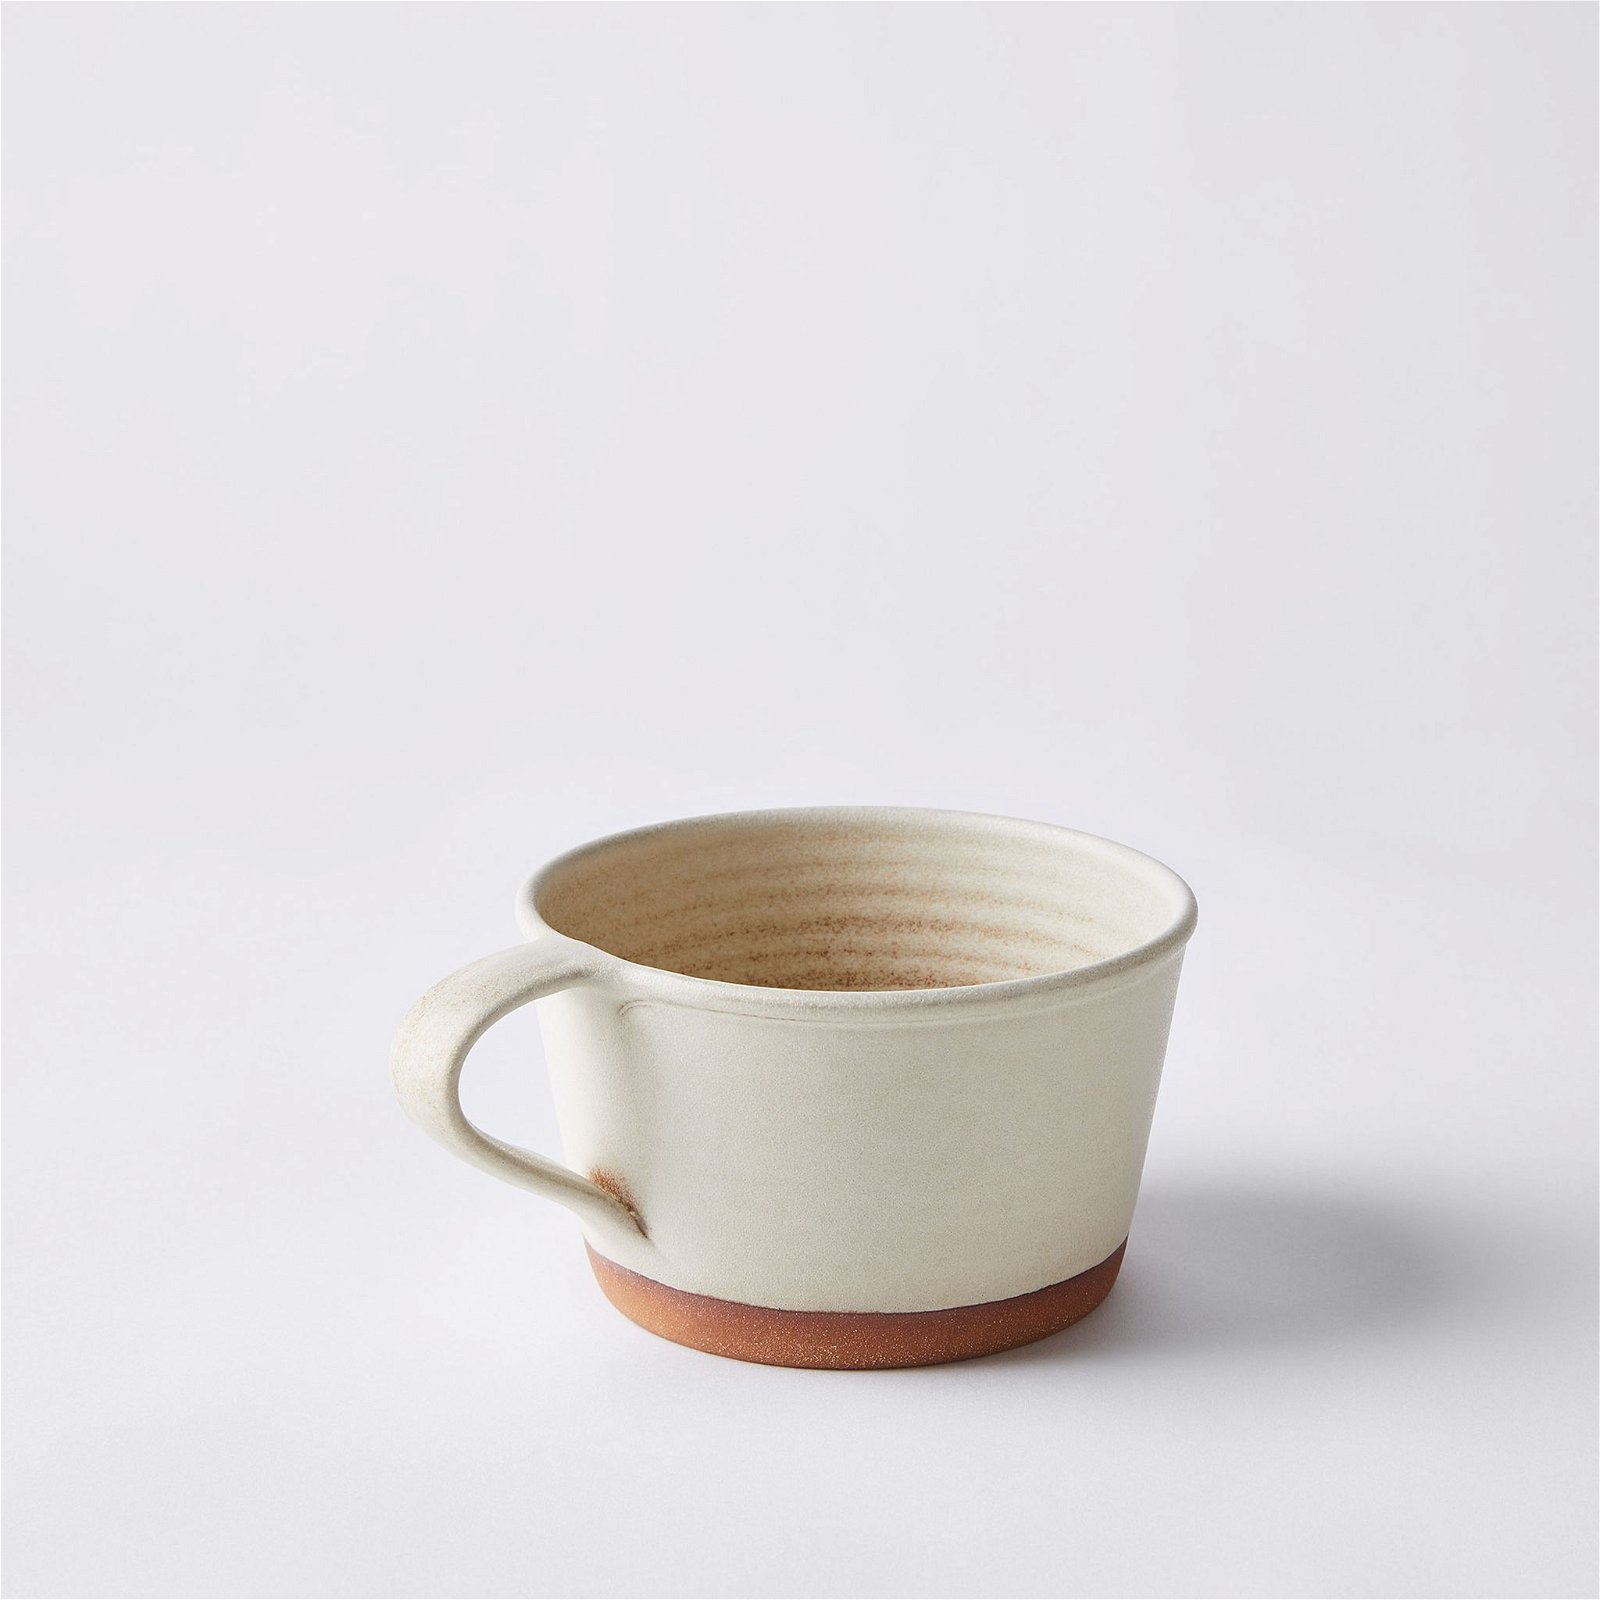 Handthrown Rustic Ceramic Soup Mugs